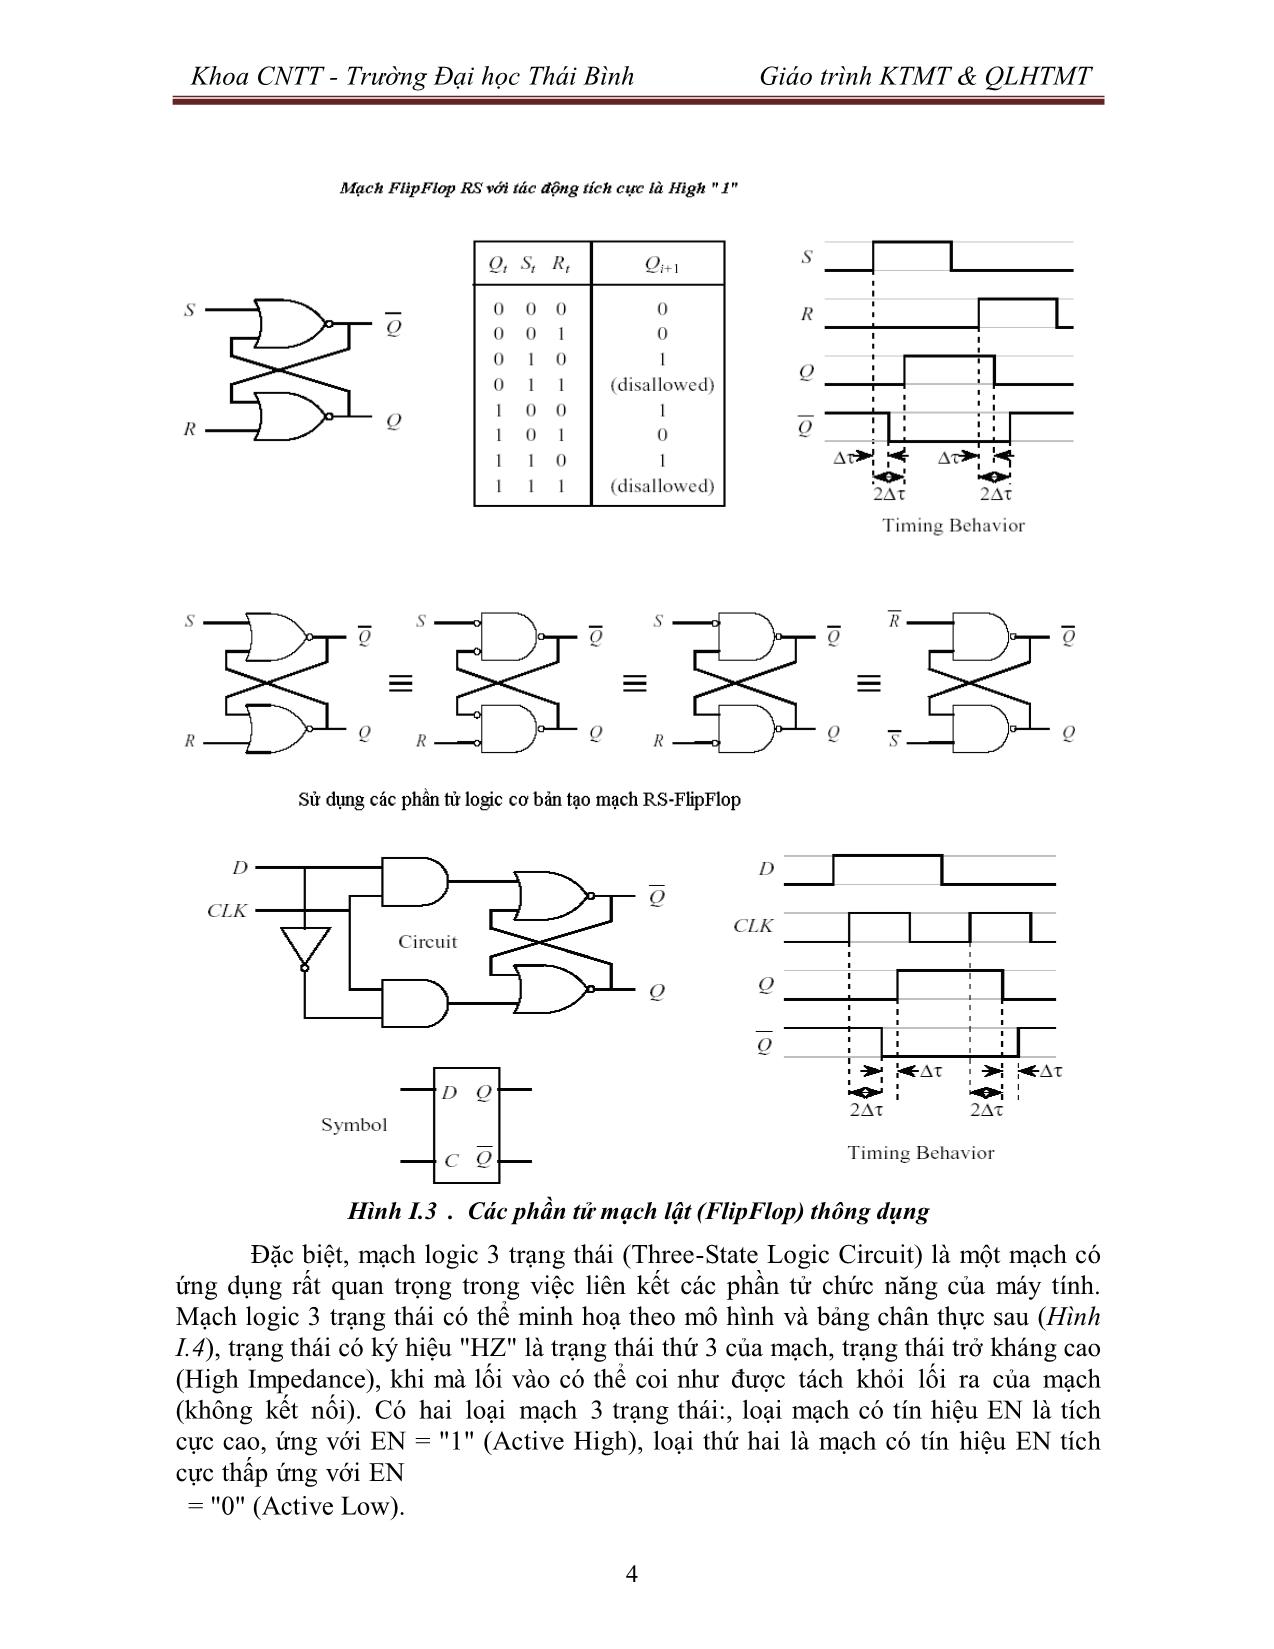 Giáo trình Kiến trúc máy tính & Quản lý hệ thống máy tính (Phần 1) trang 5